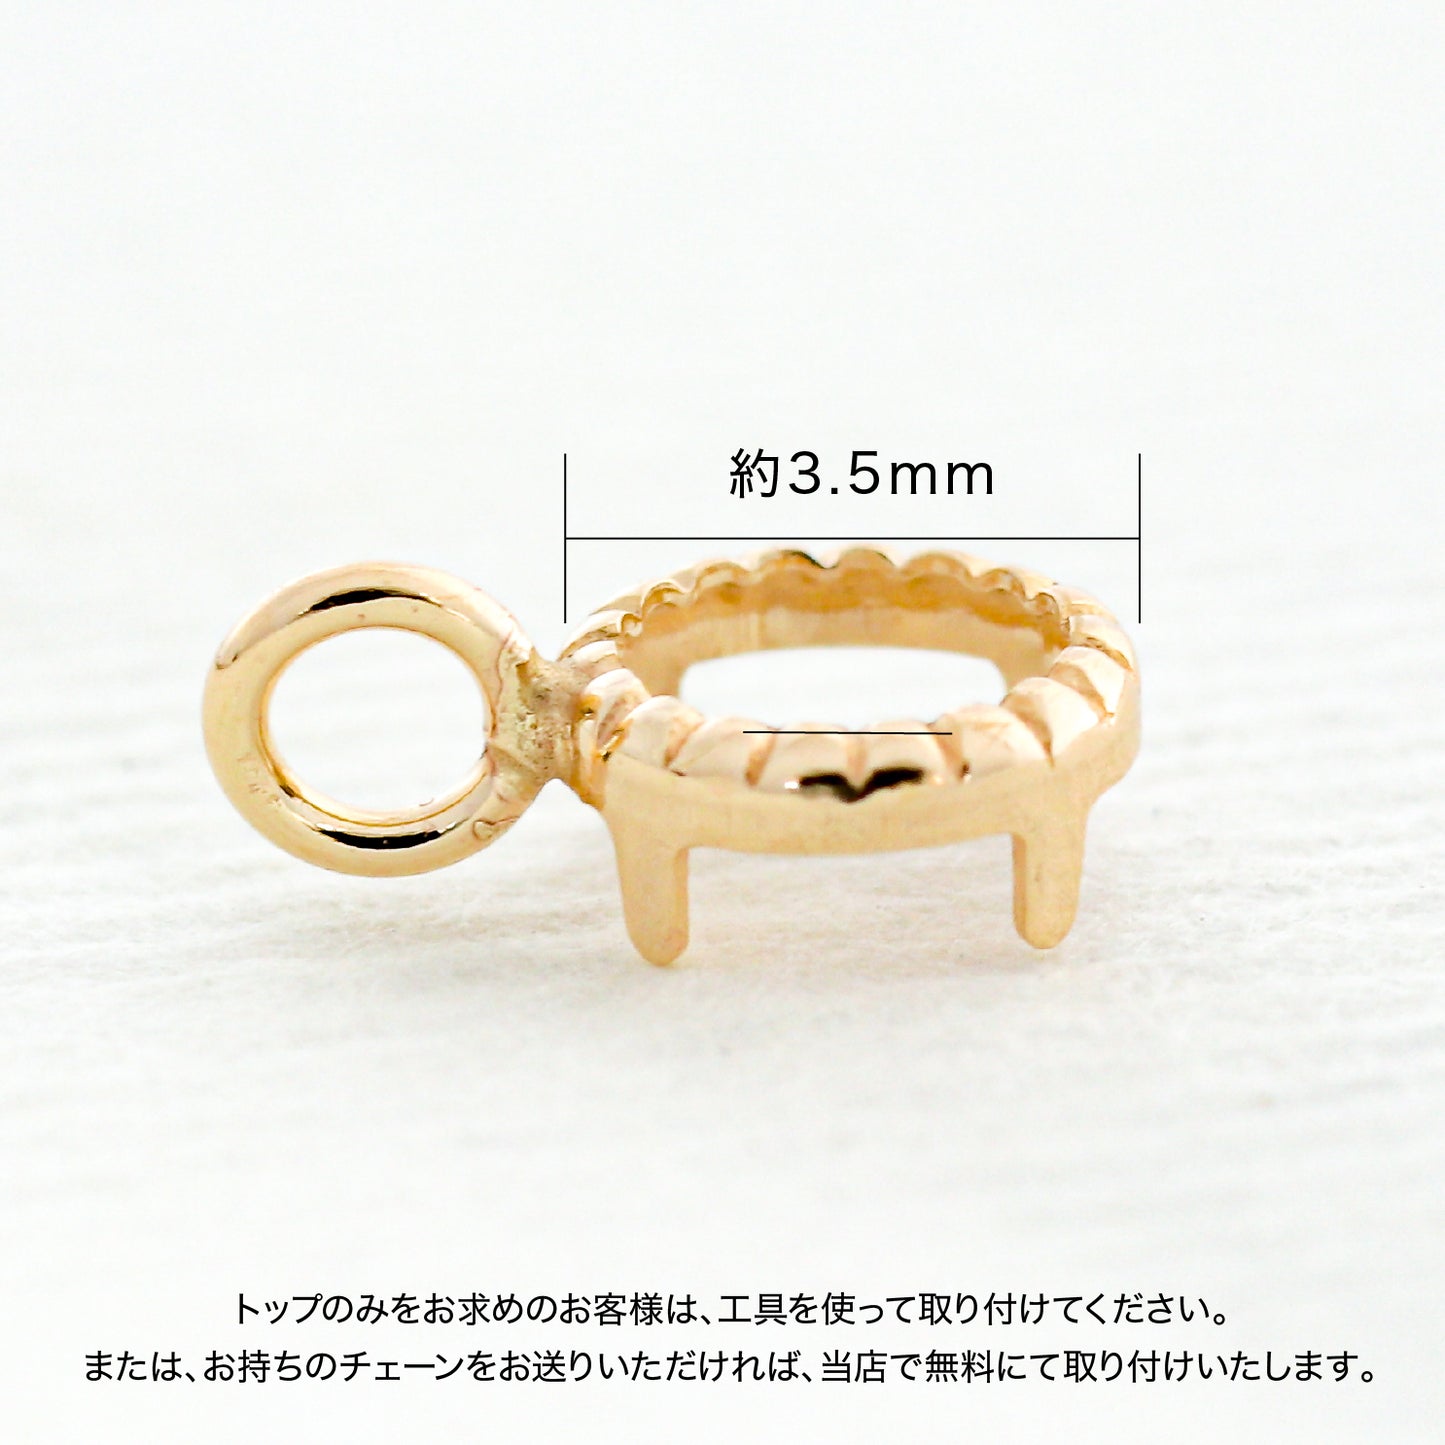 【空枠】3.5mm丸 覆輪 ネックレス | wkae177